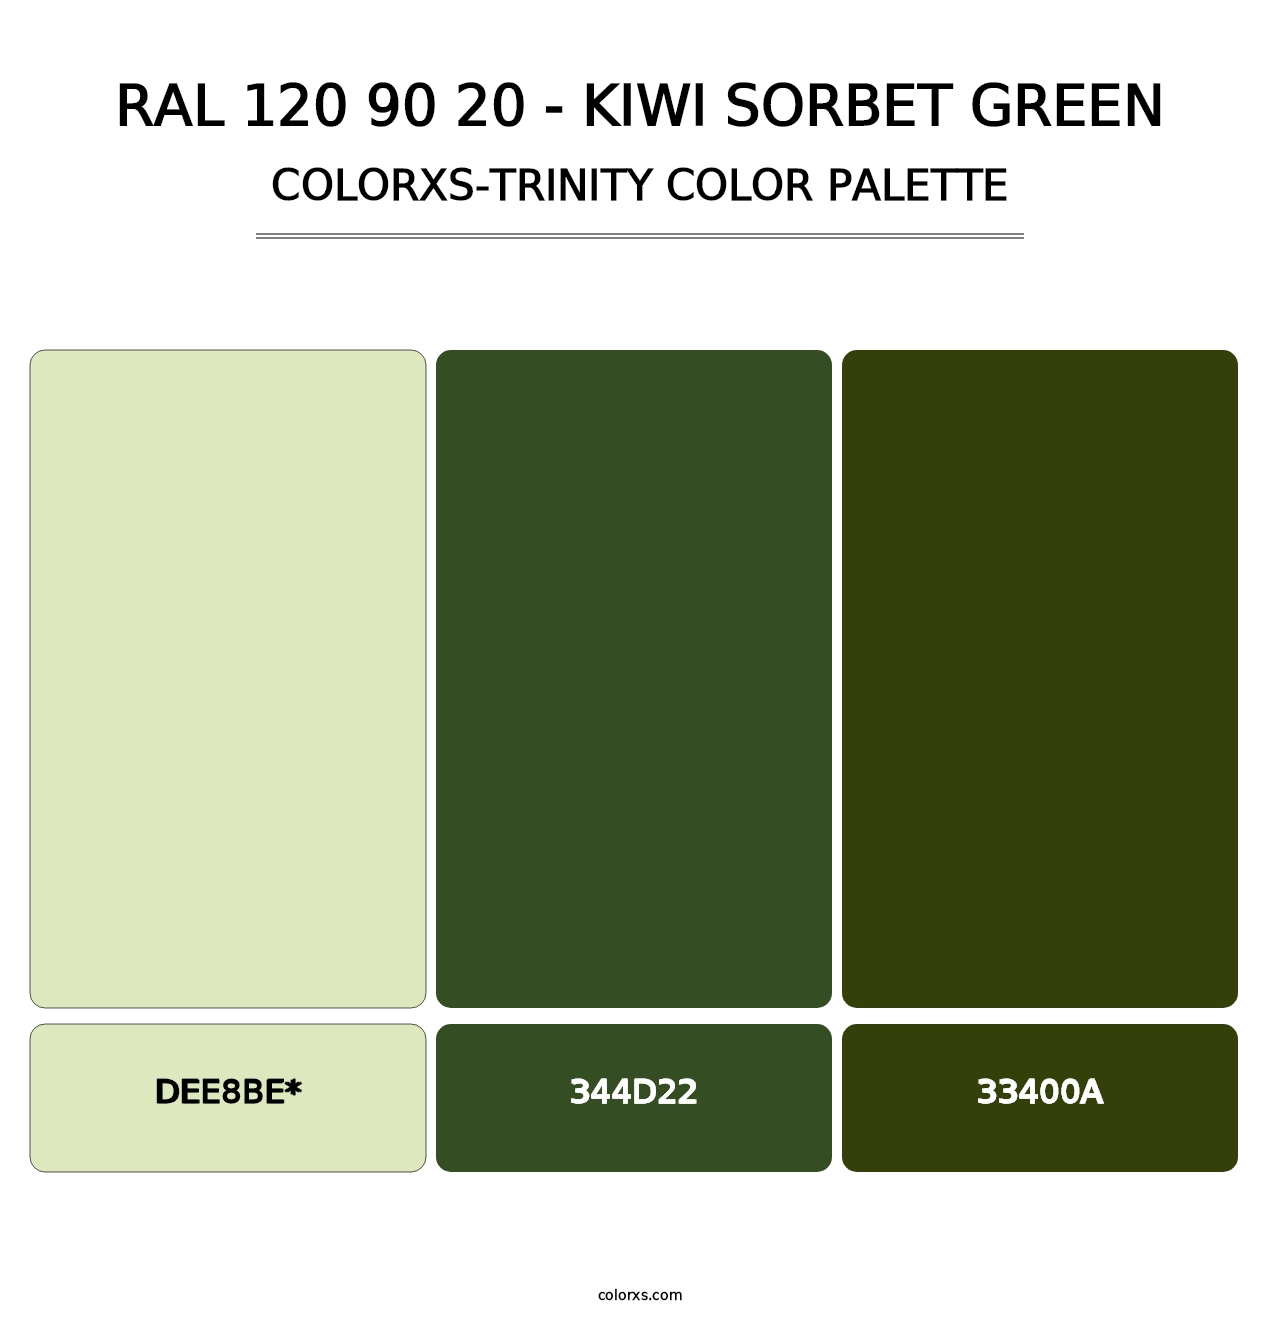 RAL 120 90 20 - Kiwi Sorbet Green - Colorxs Trinity Palette